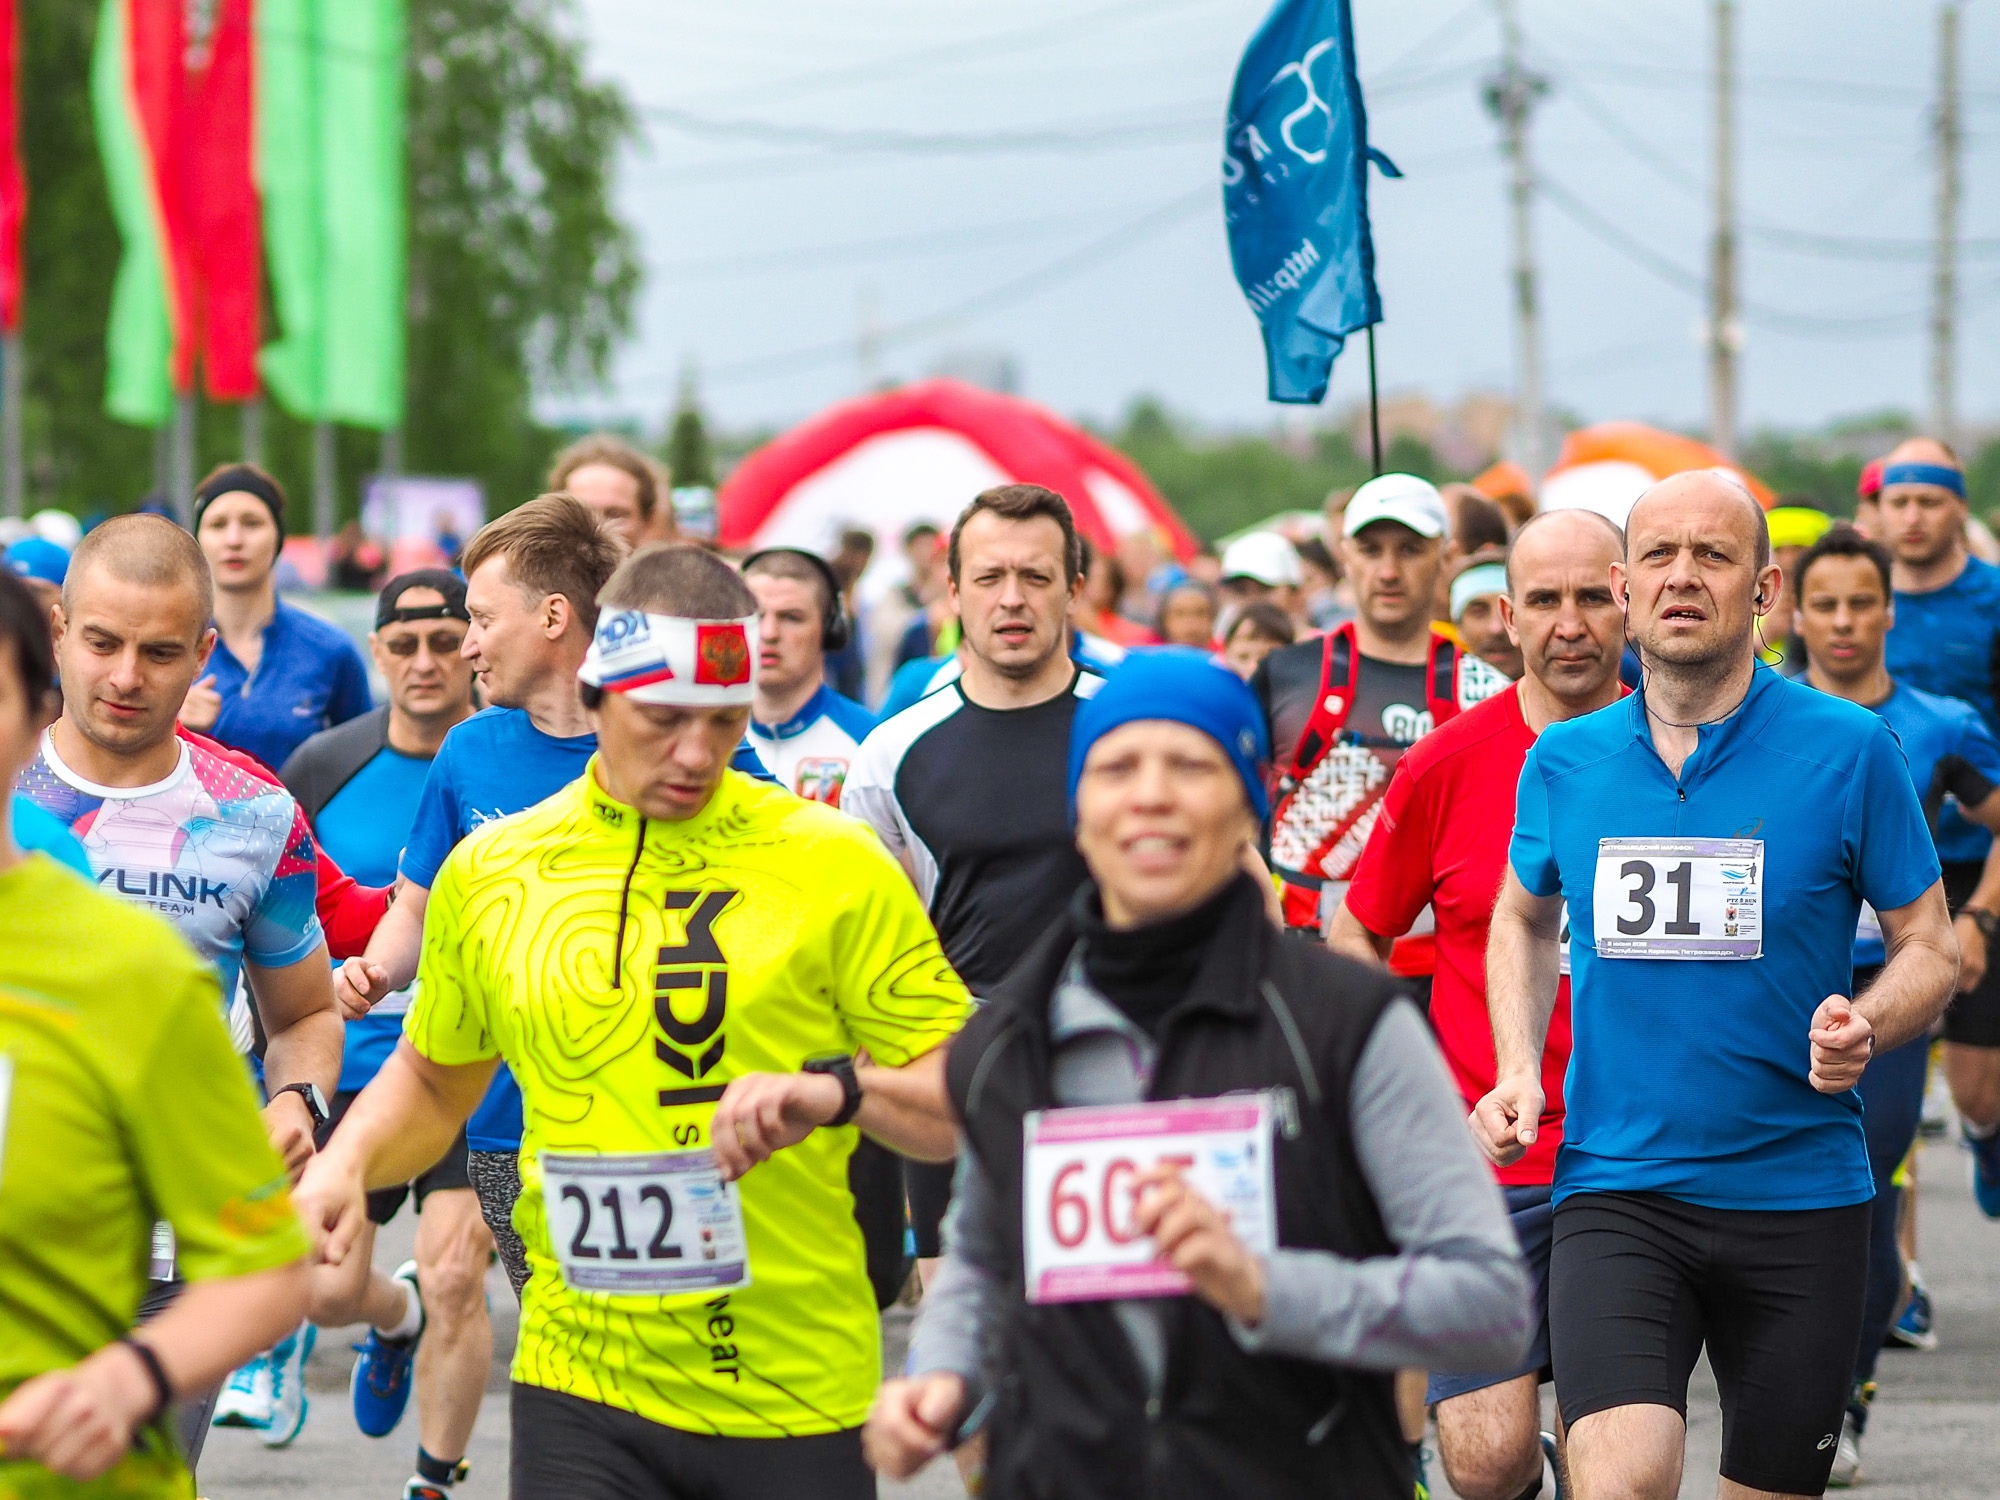 Juoksijat kilpailevat eri ikäryhmissä. Kaikki maaliin saapuvat palkitaan osallistumispalkinnolla. Kuva: Petroskoin puolimaratonin Vkontakte-sivu